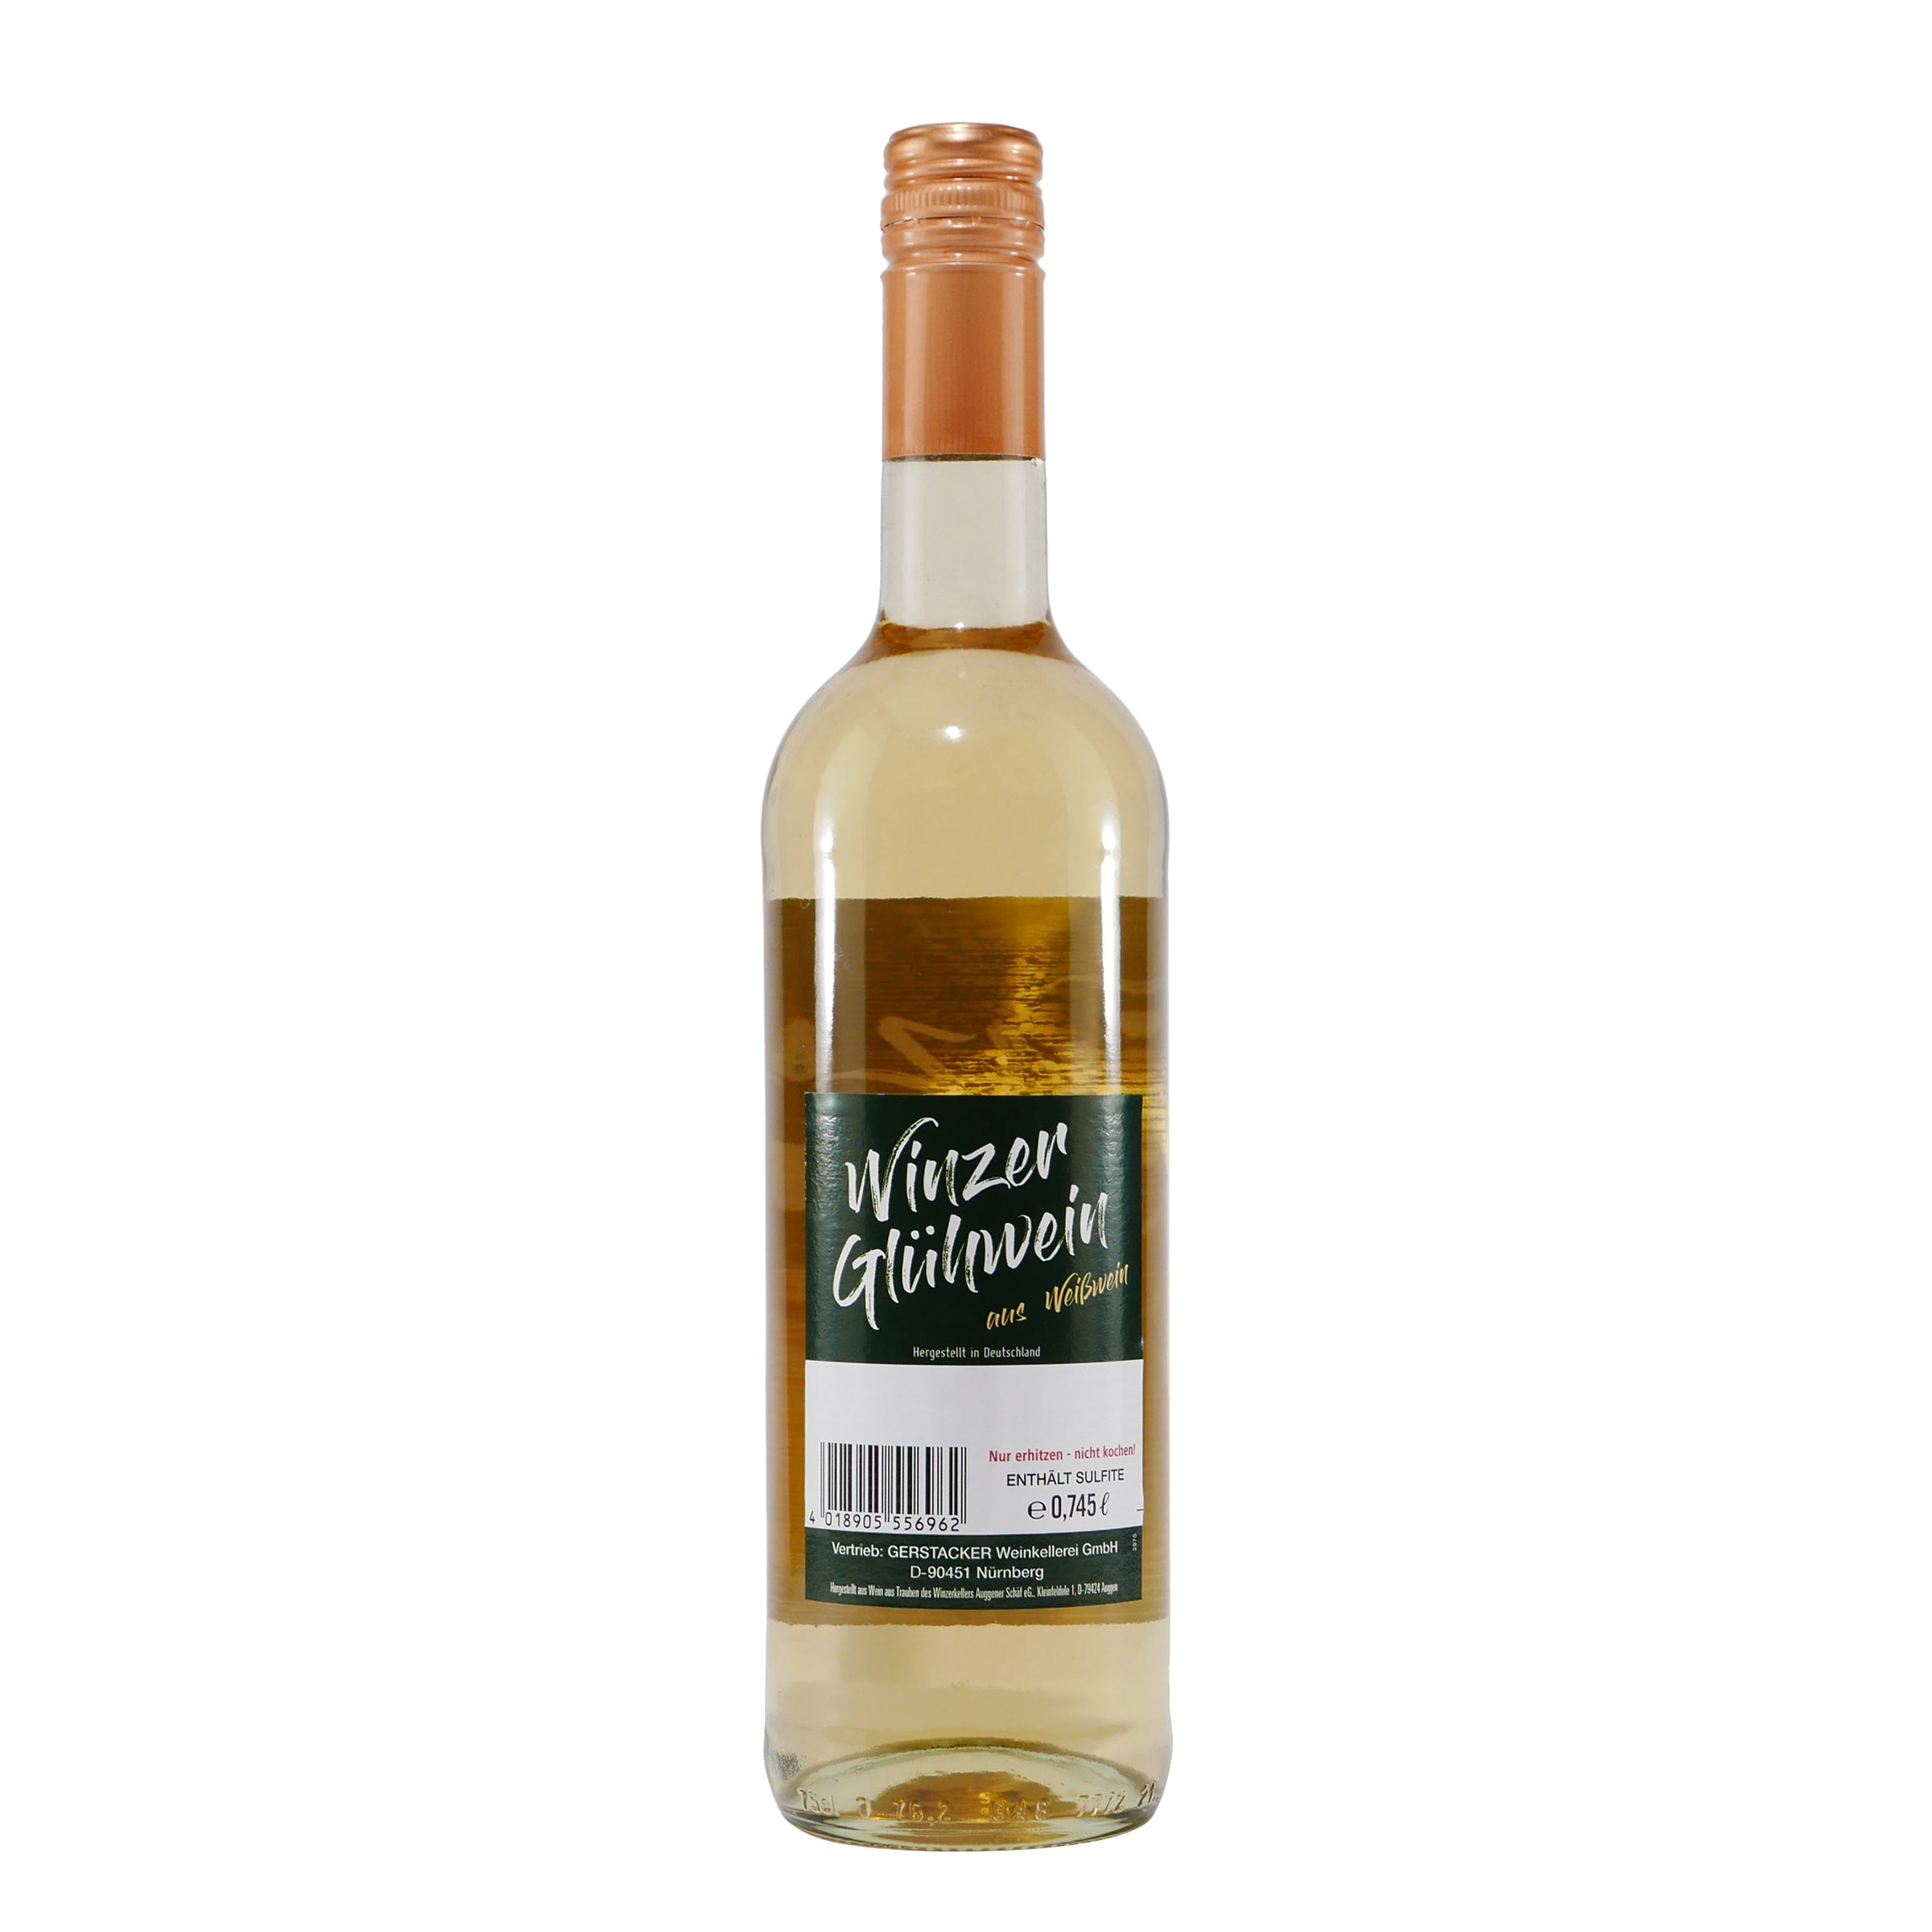 Gerstacker Winzer-Glühwein Weiß (6 x 0,745L)